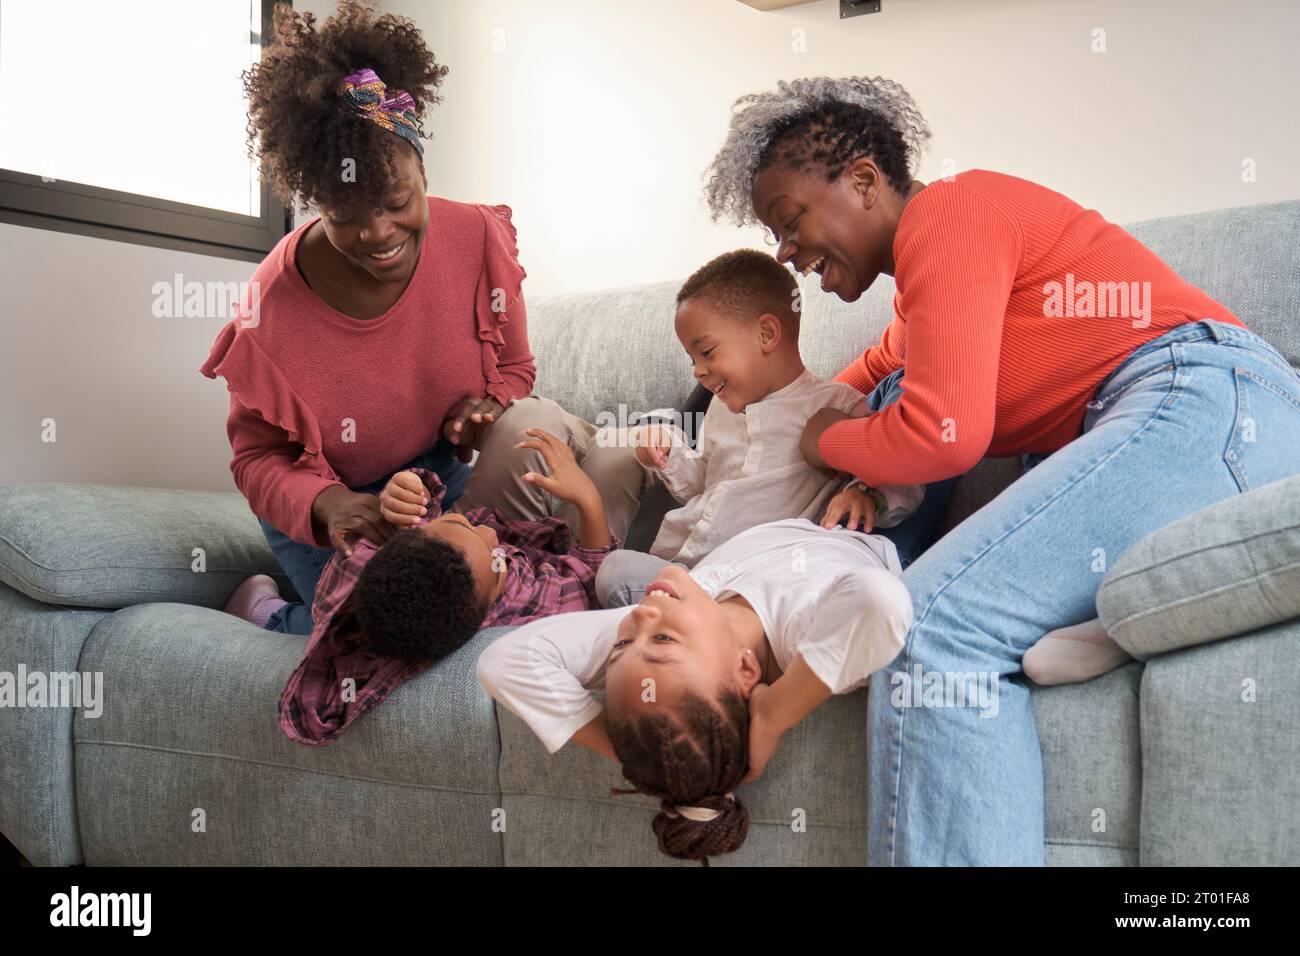 Fröhliche afrikanische Familie, die auf dem Sofa spielt, Spaß zusammen hat. Horizontale erweiterte Familie. Stockfoto